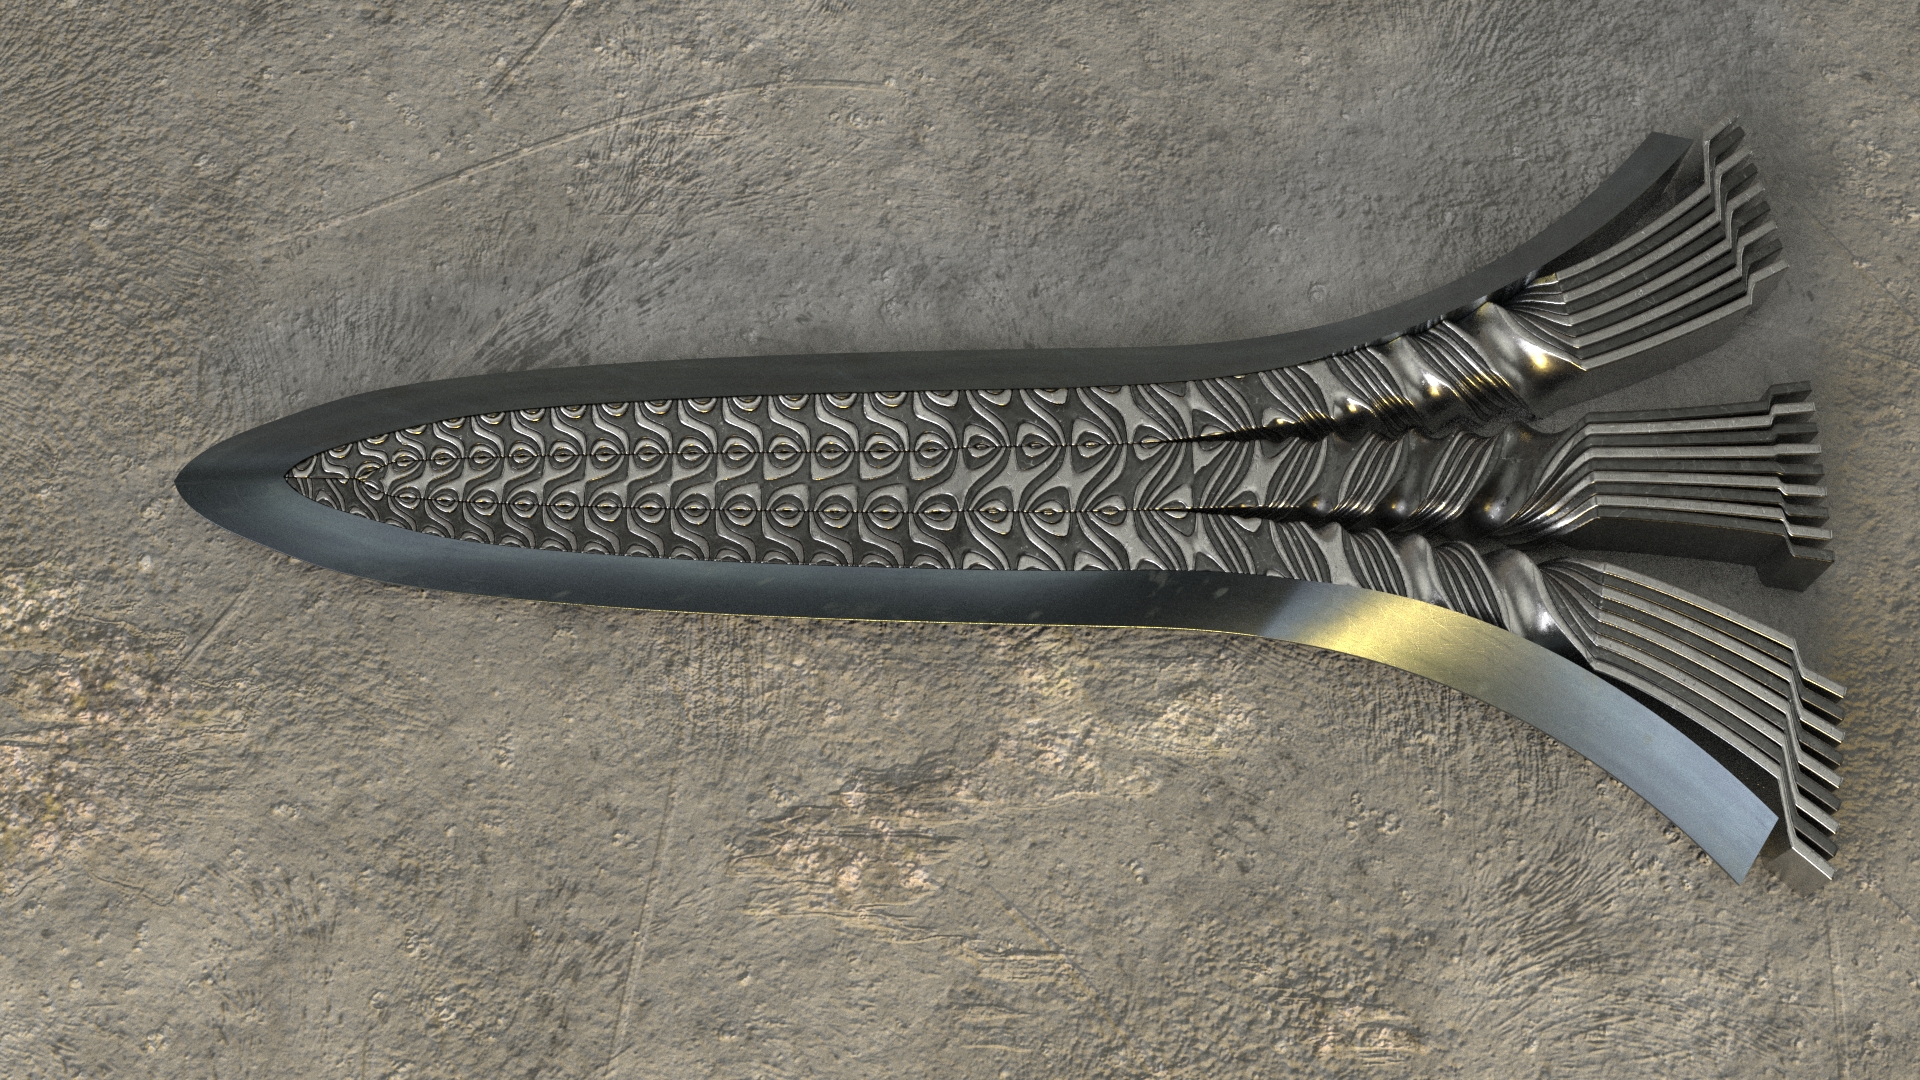 Pattern development in a pattern-welded sword blade